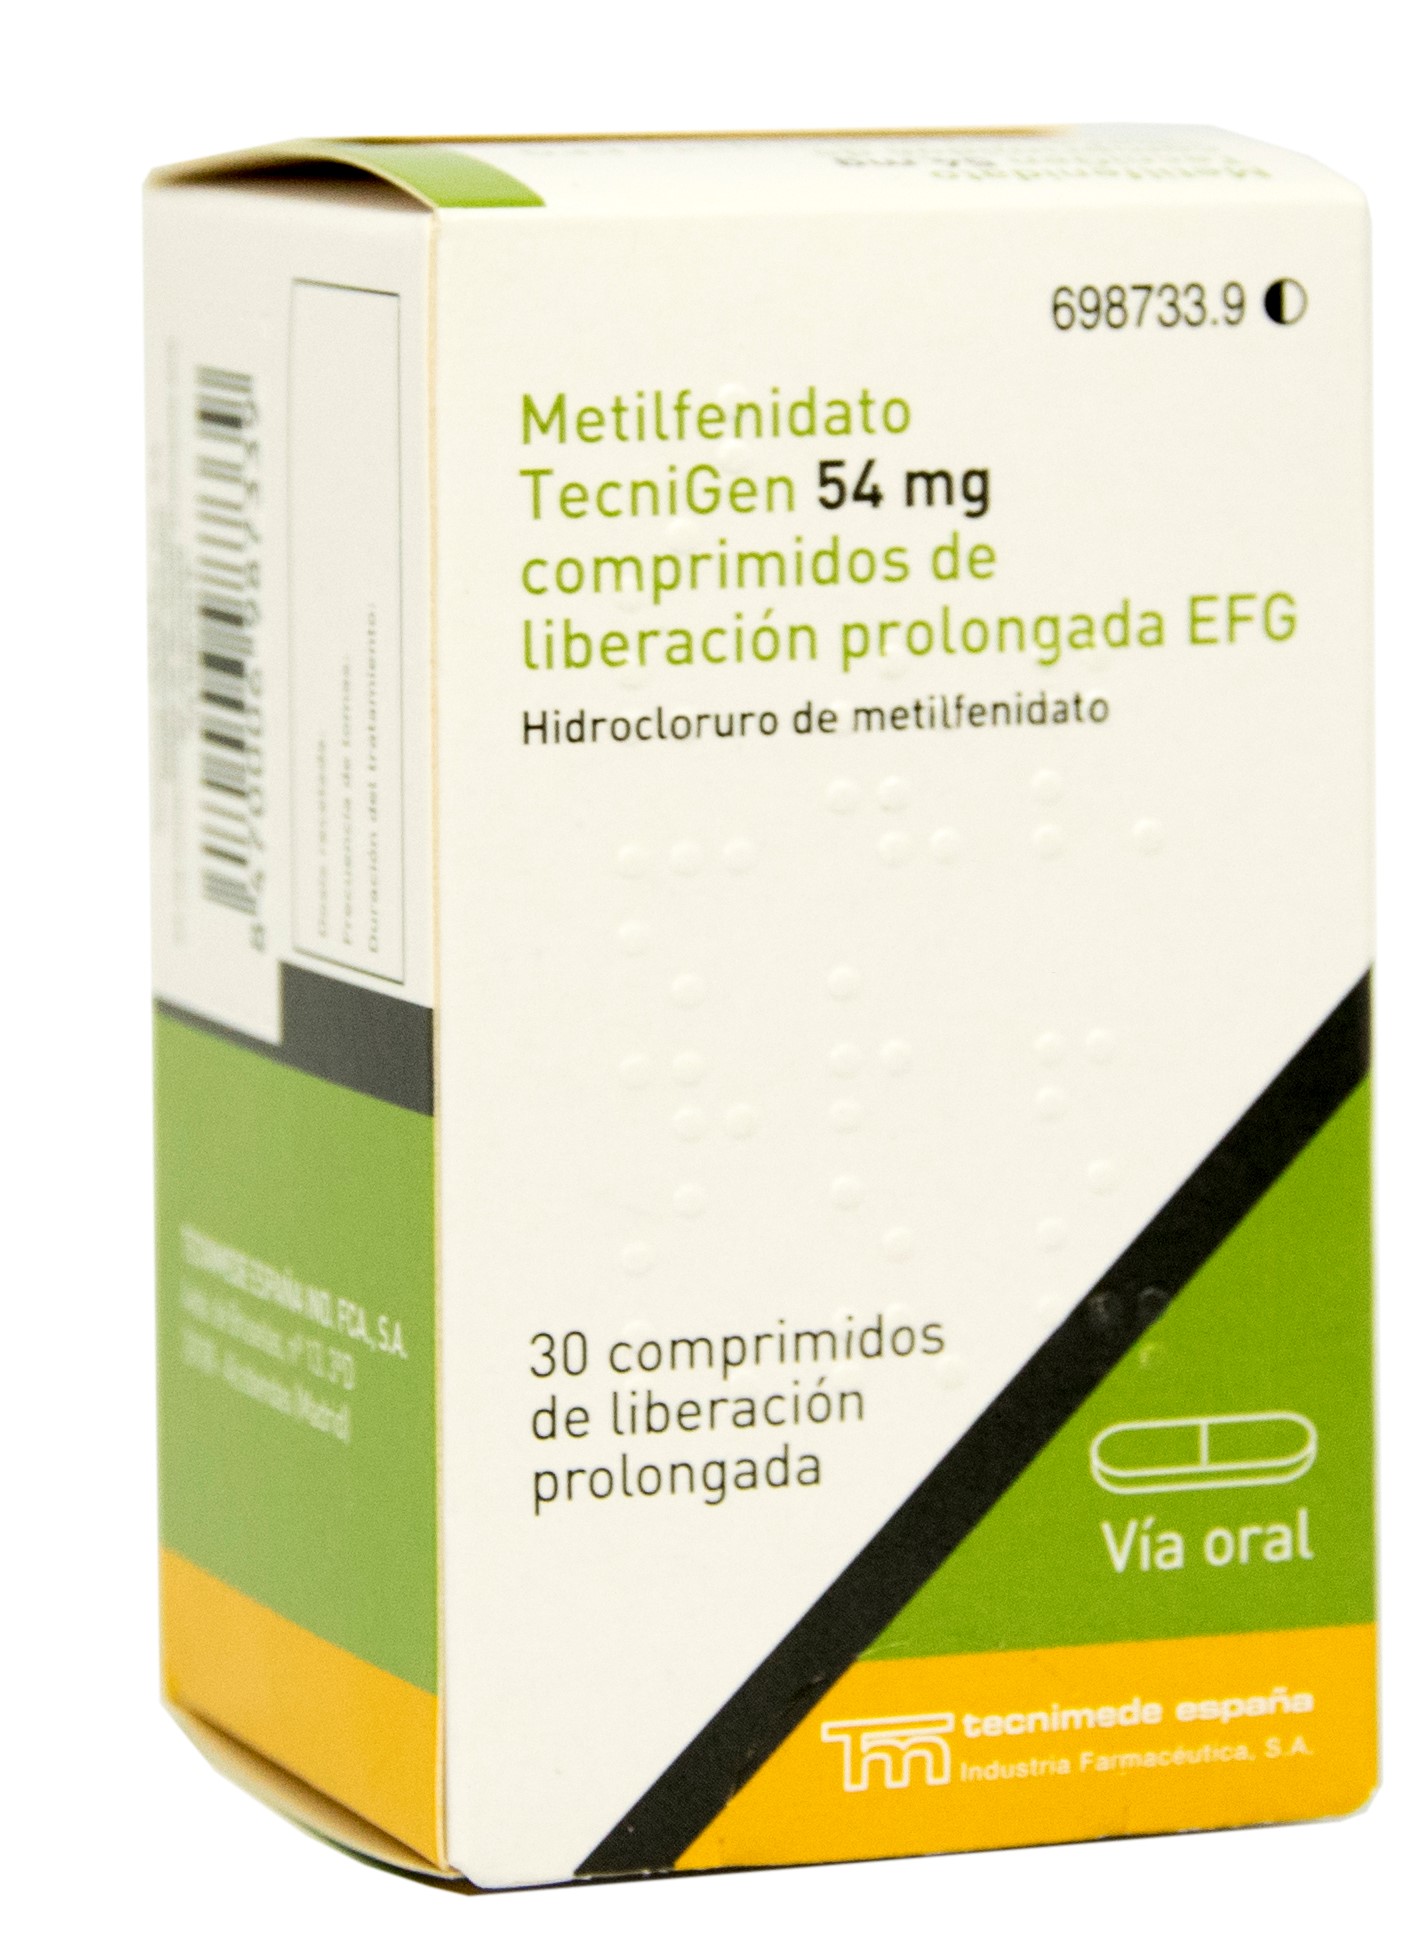 METILFENIDATO TECNIGEN EFG 54 mg 30 COMPRIMIDOS LIBERACION PROLONGADA -  Farmacéuticos